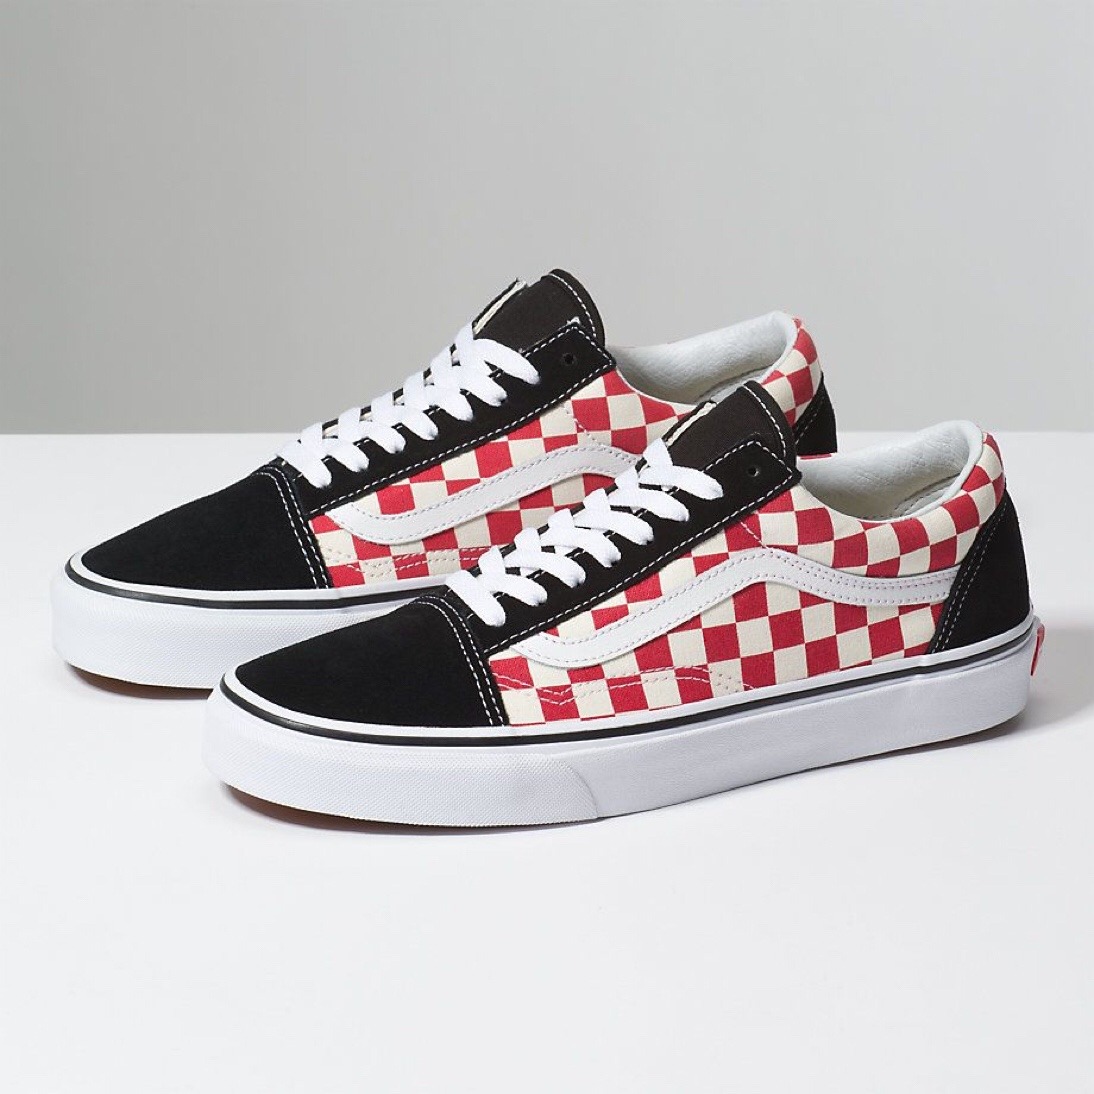 Vans Old Skool “Checkerboard Red”